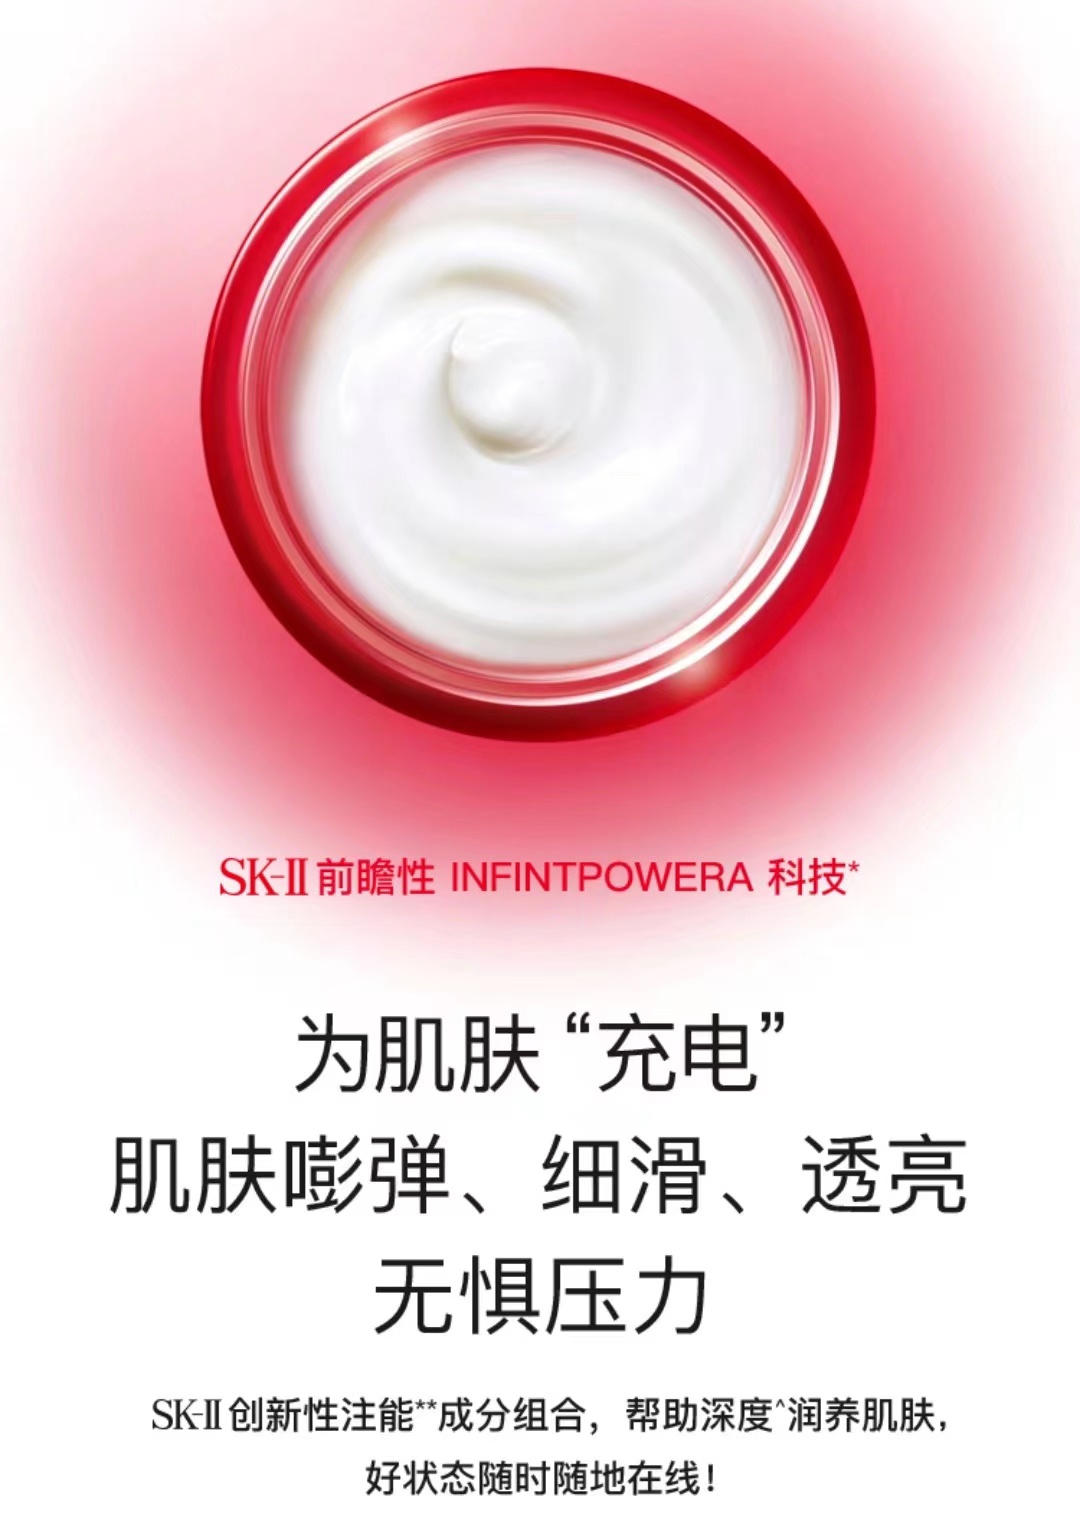 SK-II/SK2肌源修護精華霜多元面霜大紅瓶面霜15g